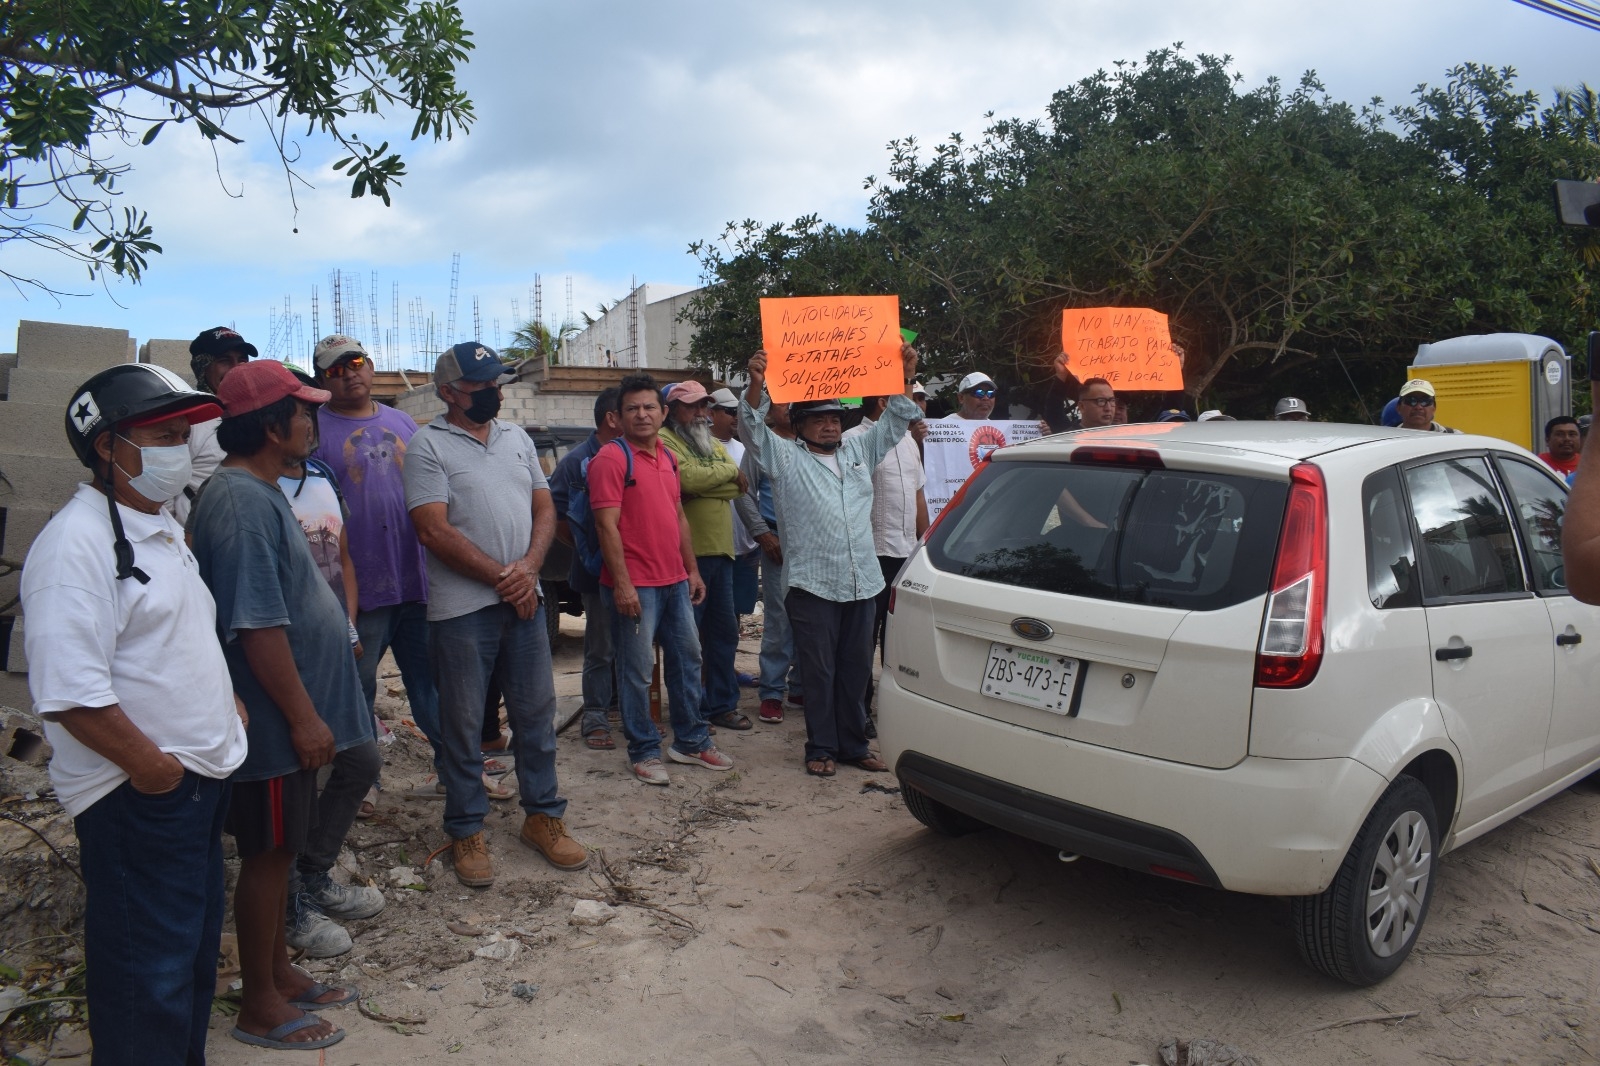 Los albañiles de Progreso protestaron y bloquearon la entrada de camiones de una constructora